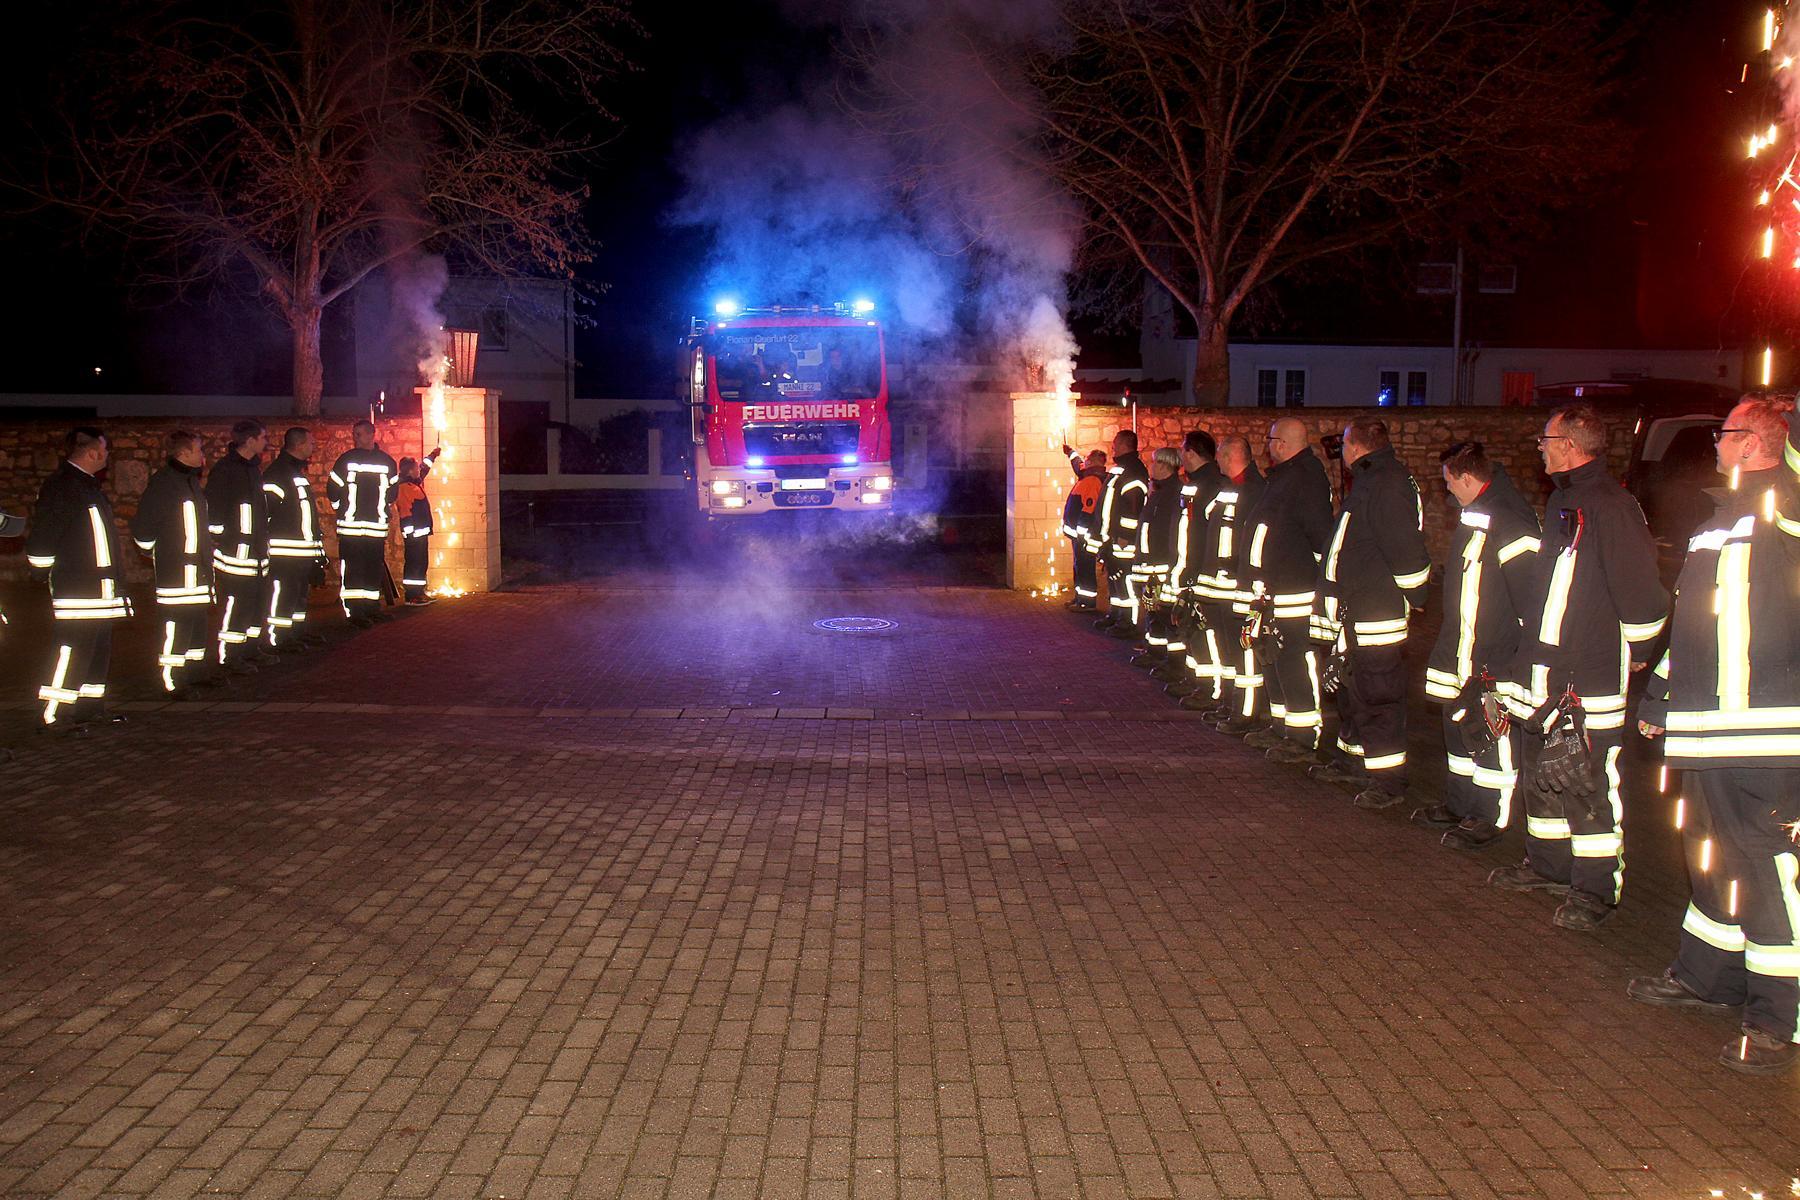 Begrüßung des neuen Tanklöschfahrzeuges durch die Kameraden der Feuerwehr Querfurt (alle geimpft).